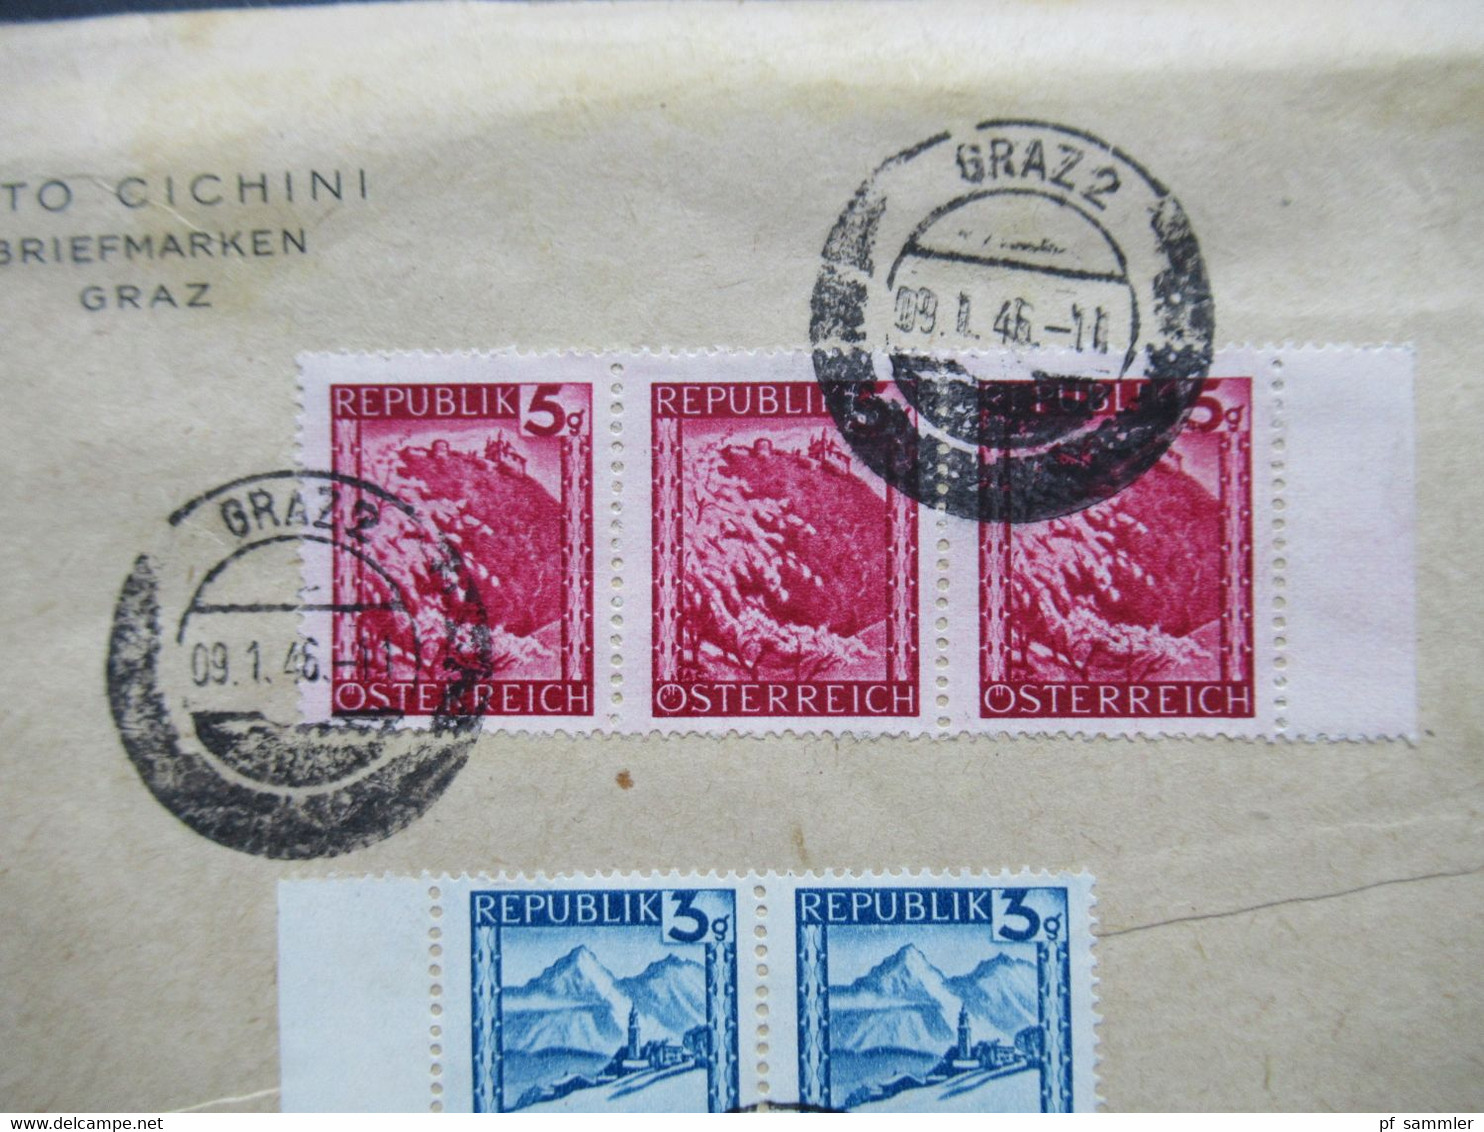 9.1.1946 Landschaften Nr. 738 (3) Und 739 (3) Randstücke Aptierter Stempel Graz 2 Umschlag Otto Cichini Briefmarken - Briefe U. Dokumente